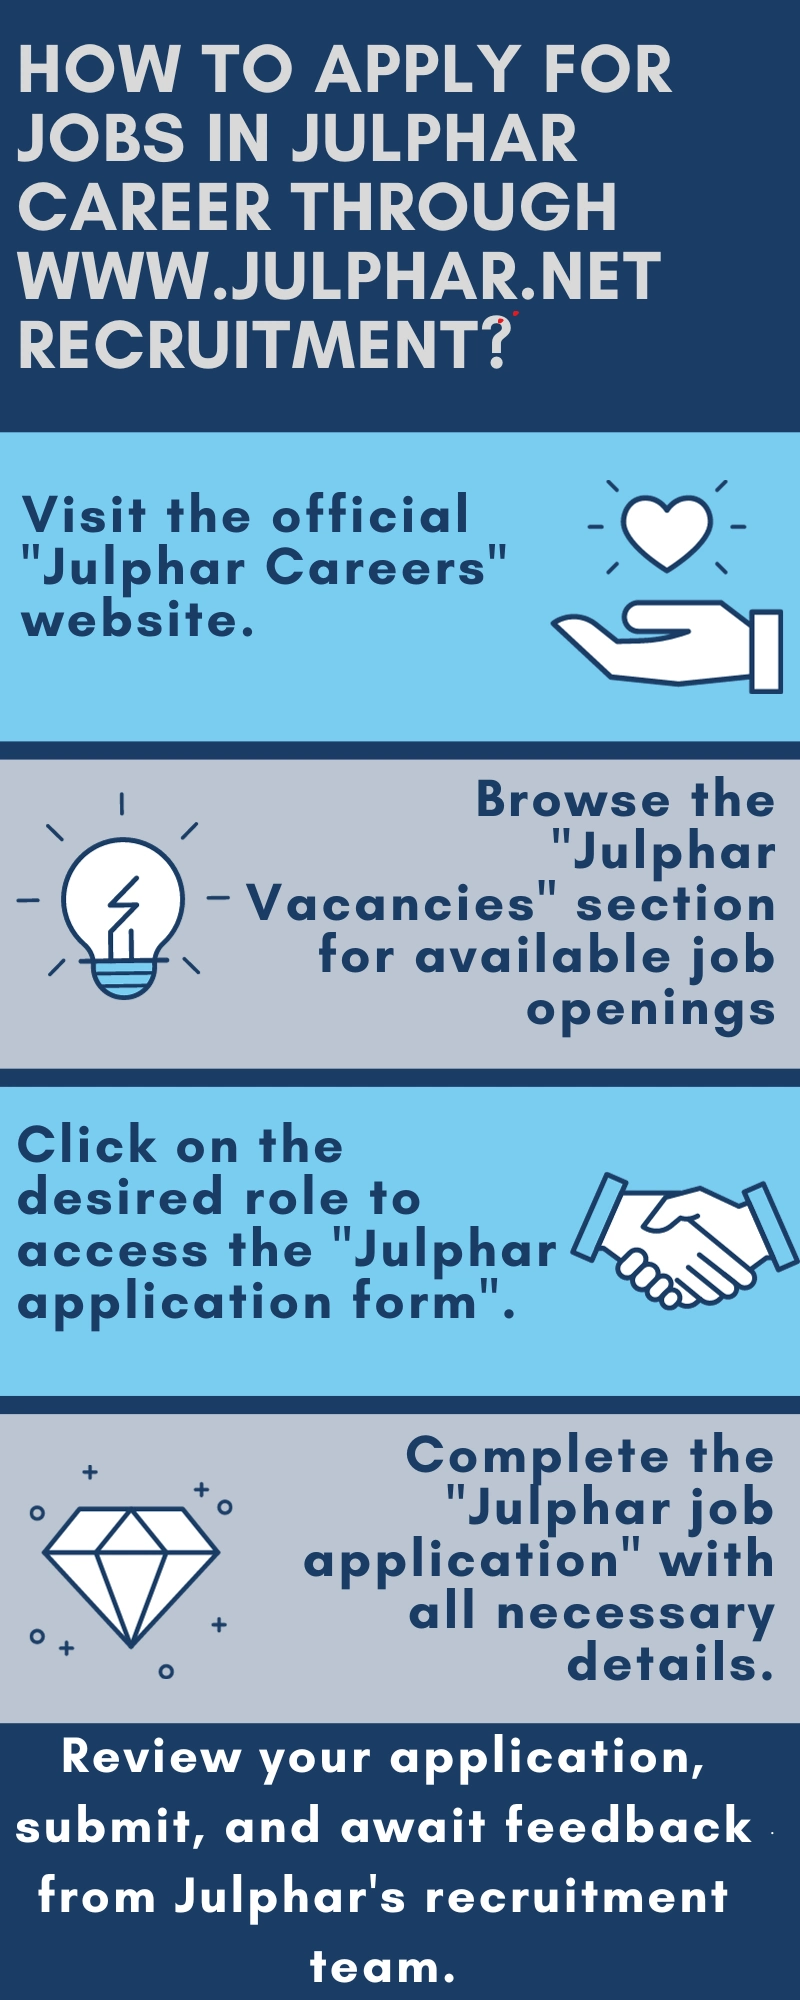 How to Apply for Jobs in Julphar Career through www.julphar.net recruitment?